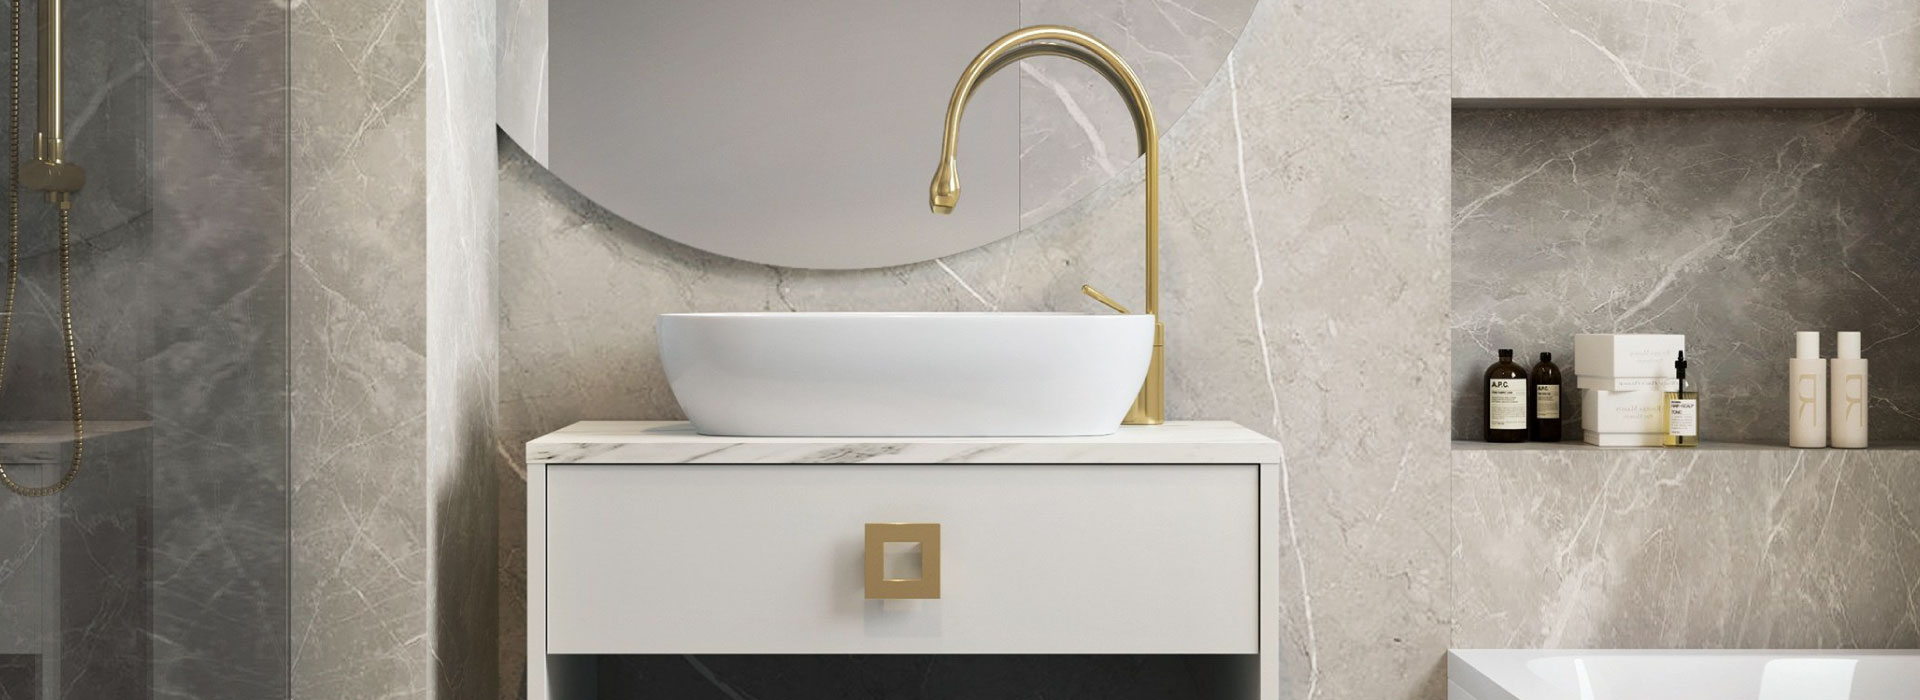 Zbliżenie na szafkę umywalkową z dekoracyjną półka i blatem w kolorze białego marmuru. Szafka posiada dekoracyjny, kwadratowy uchwyt w kolorze złotym, a na niej widoczna jest umywalka ze złotym kranem.